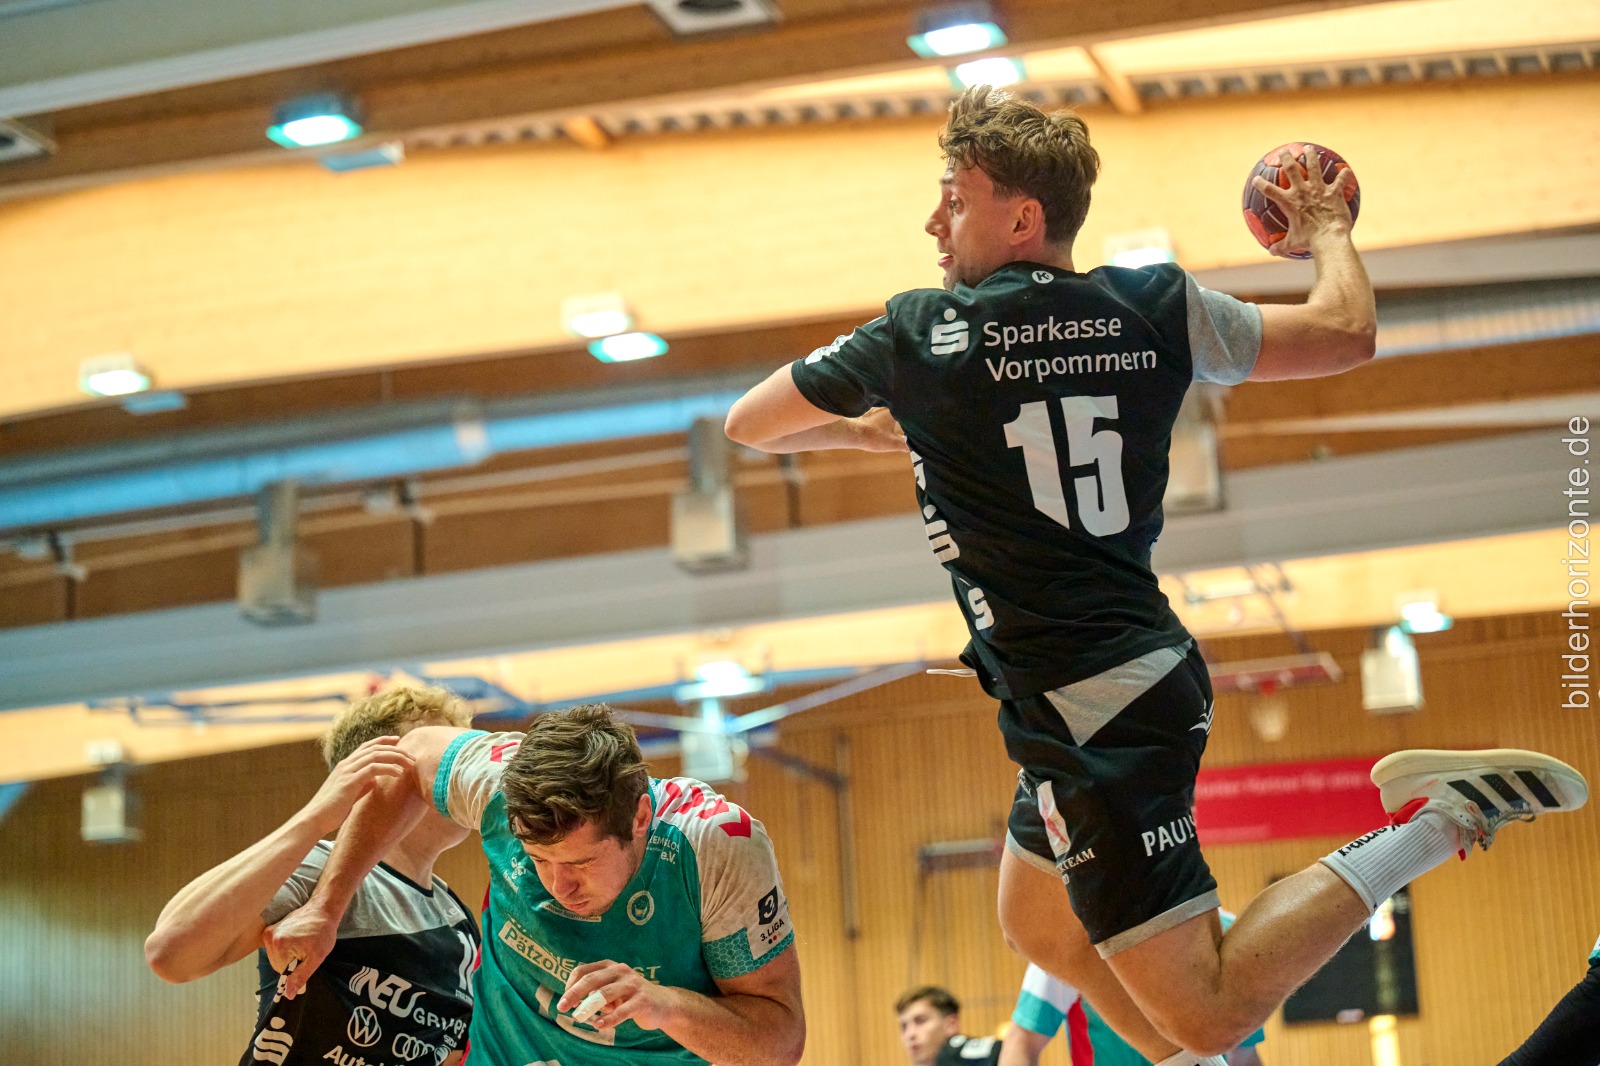 Handball vom Feinsten auf Sportdeutschland!